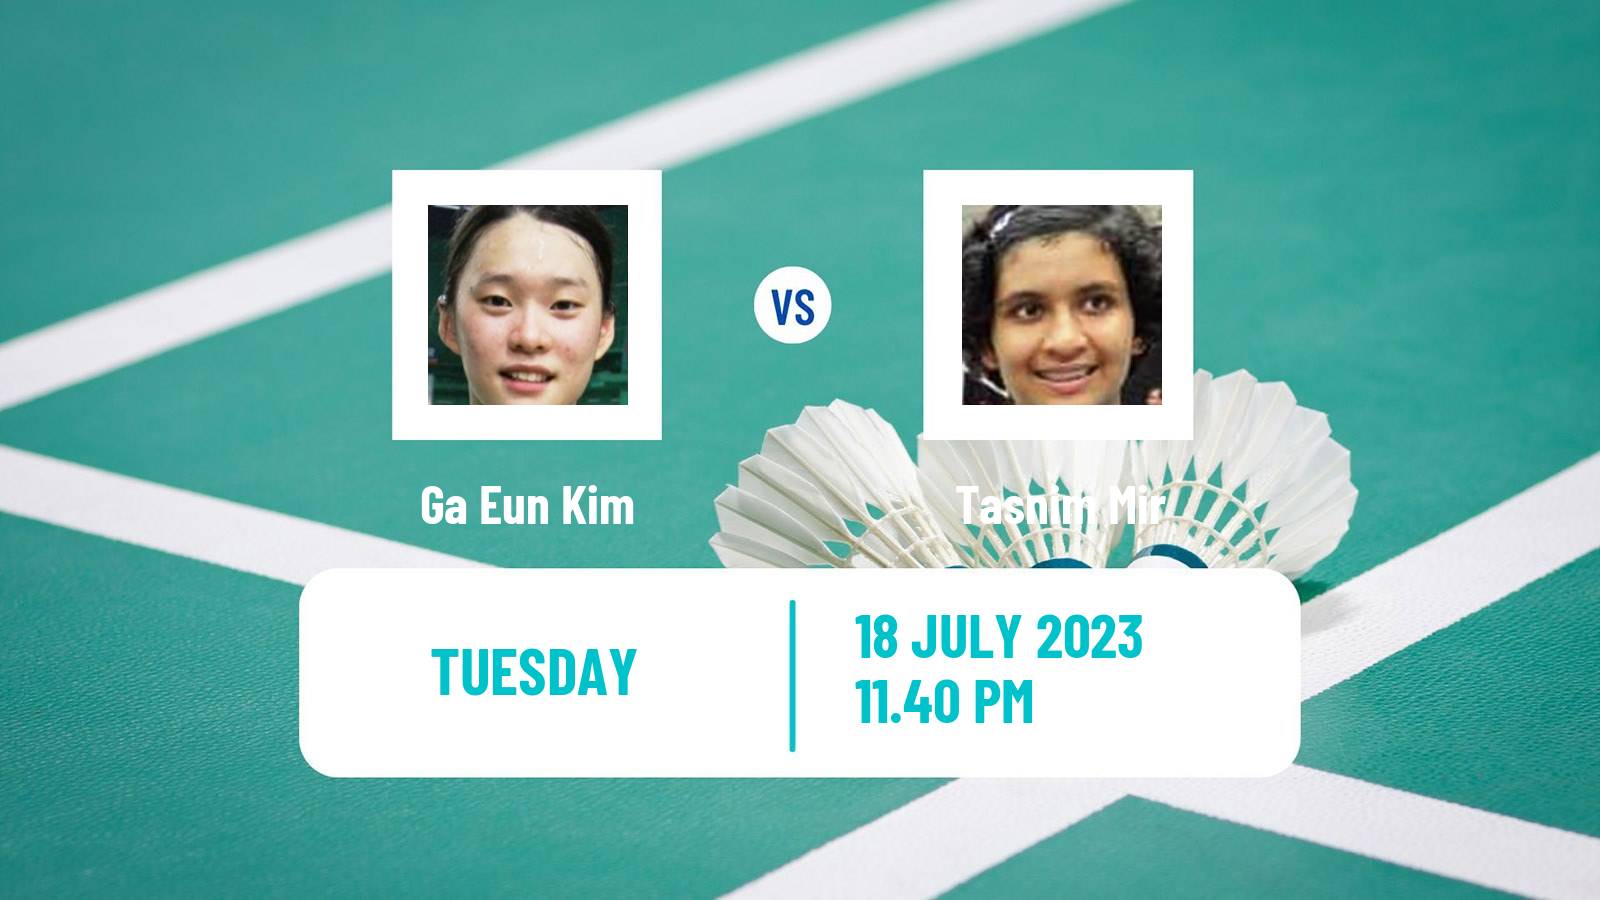 Badminton BWF World Tour Korea Open Women Ga Eun Kim - Tasnim Mir